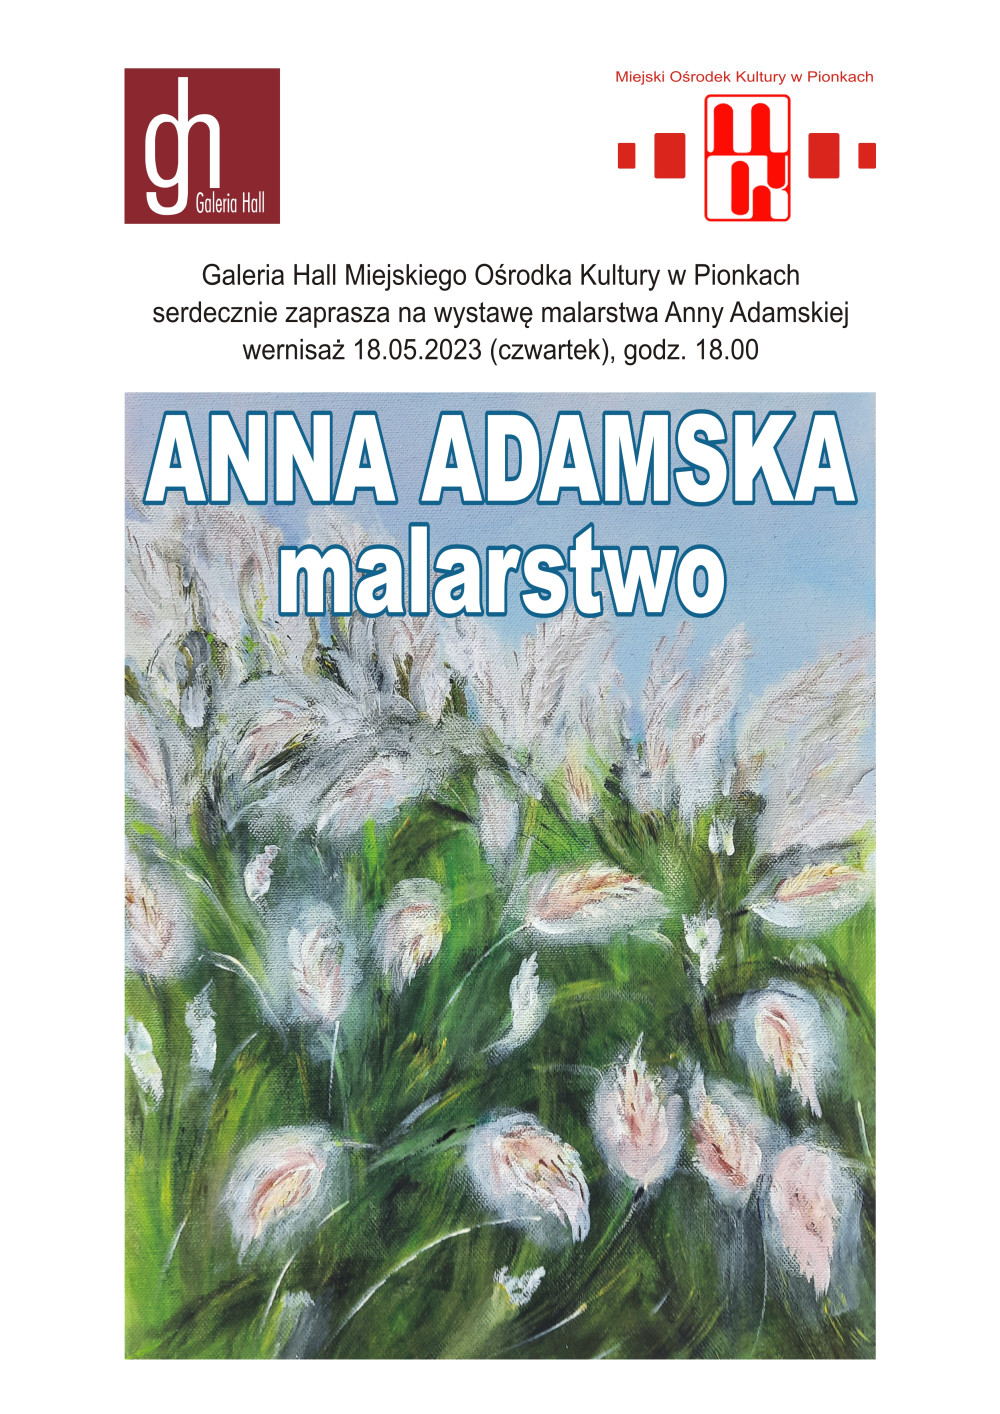 Debiut twórczy Anny Adamskiej – wernisaż wystawy malarstwa